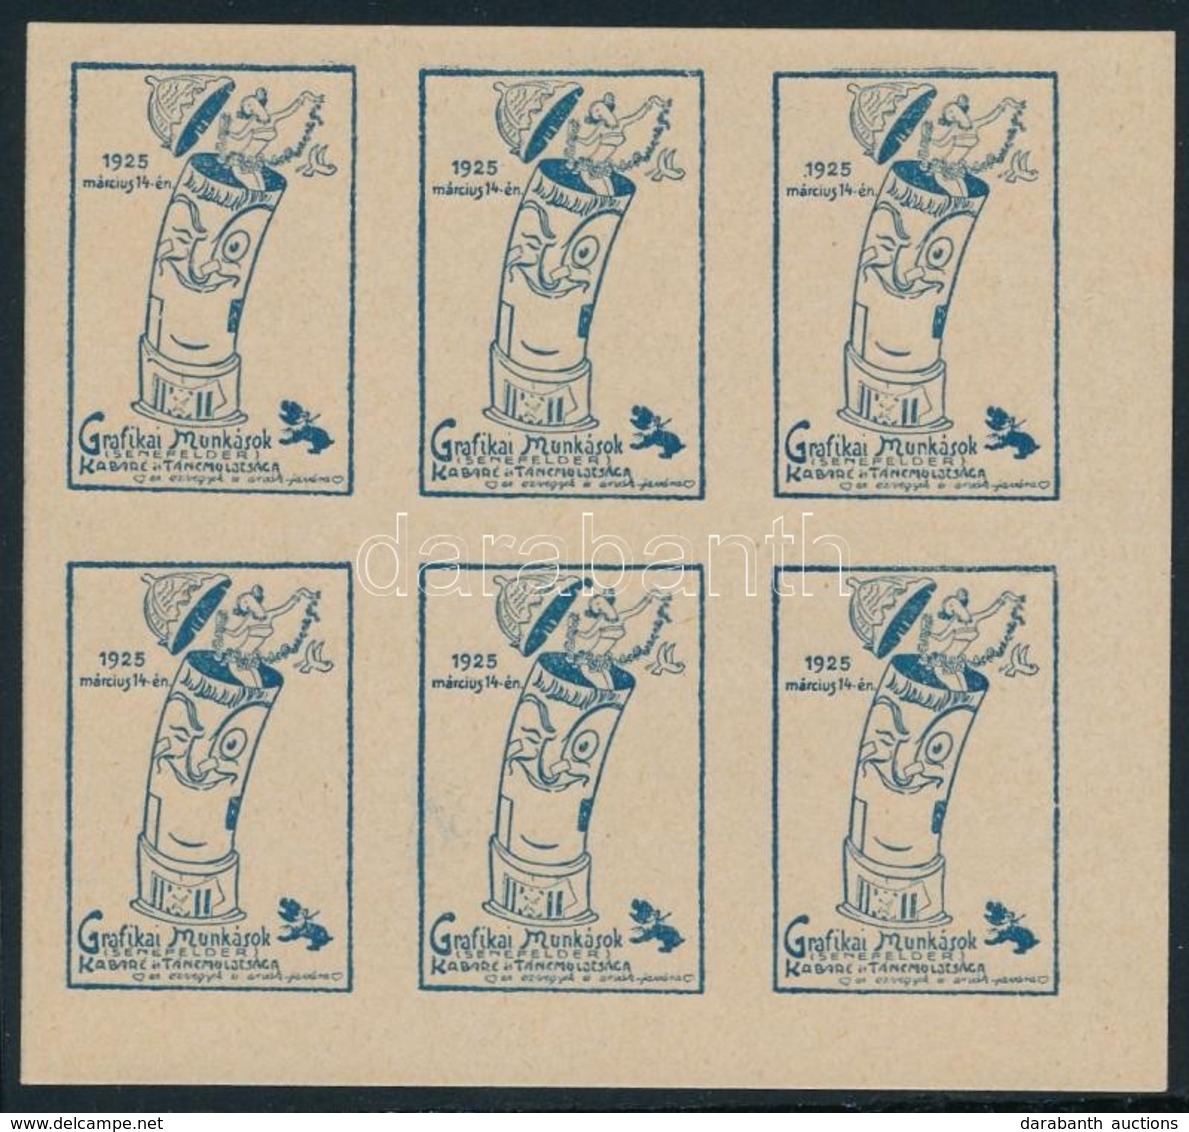 1925 Grafikai Munkások Kabaré és Táncestélye 6 Db-os Kék Levélzáró Tömb - Ohne Zuordnung